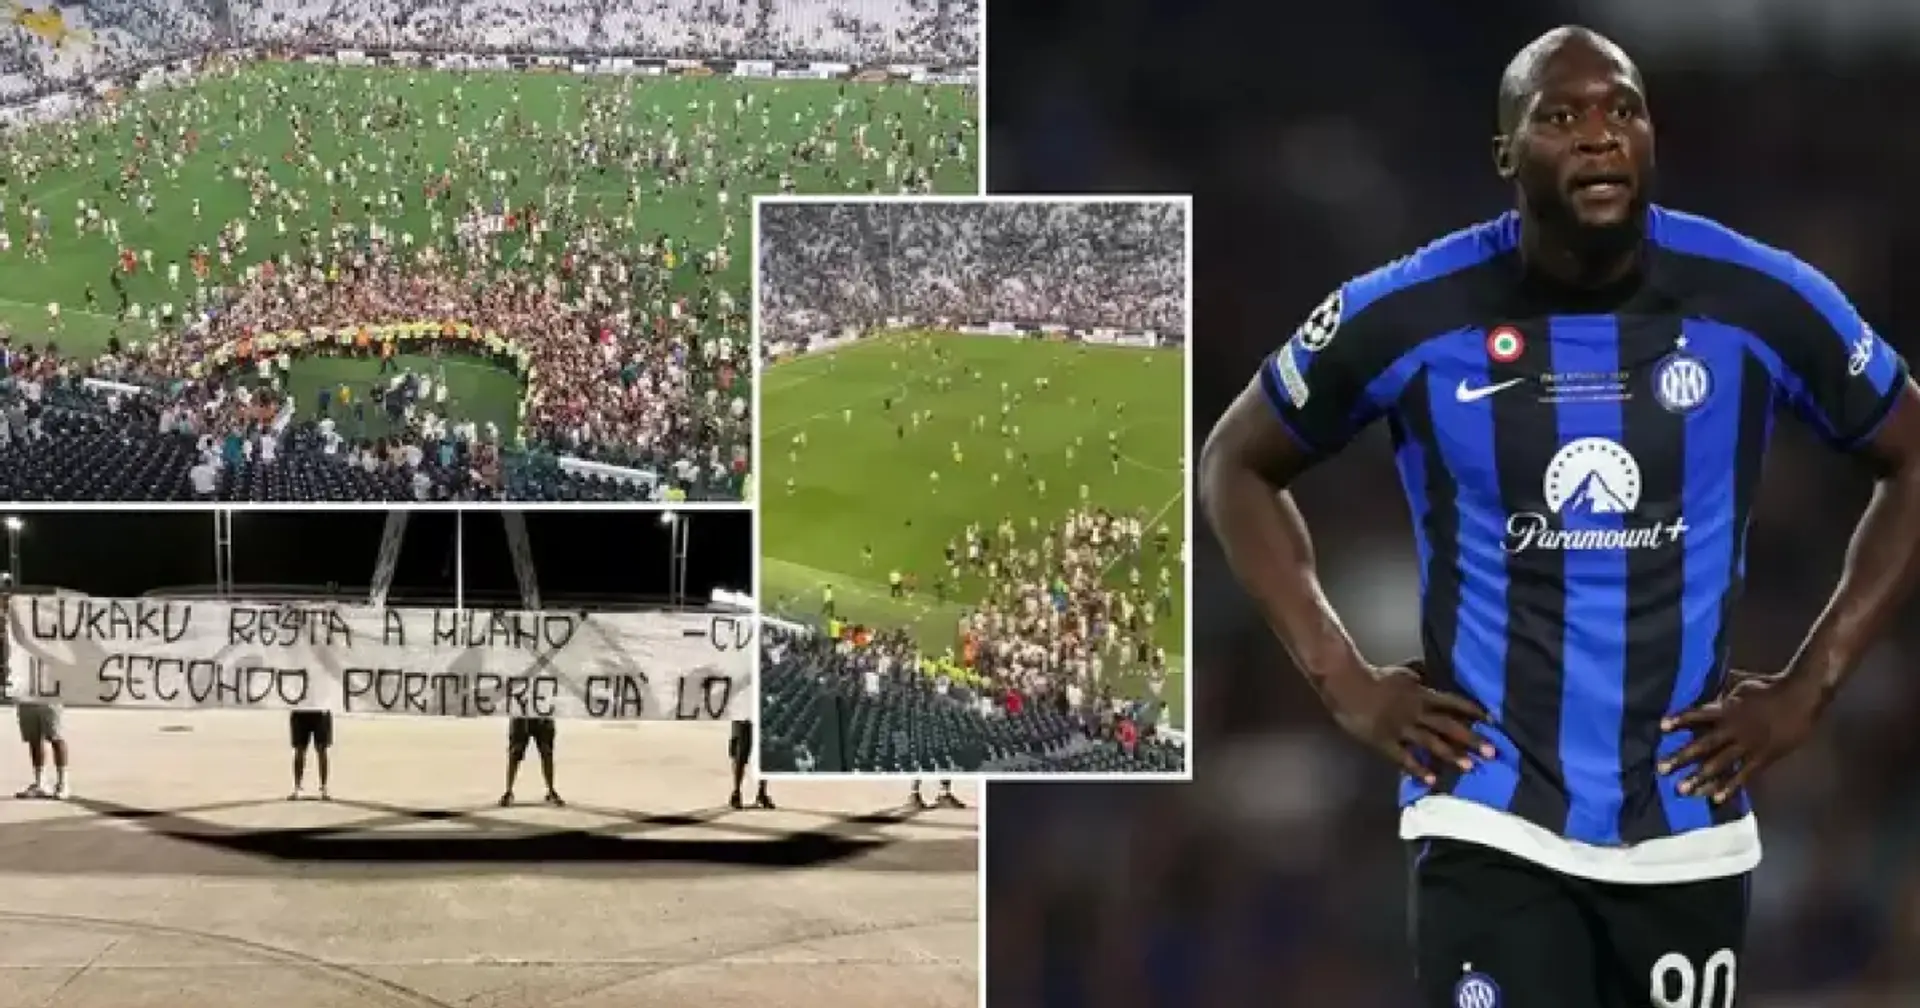 Juve-Fans stürmen Spielfeld und protestieren gegen die Verpflichtung von Romelu Lukaku